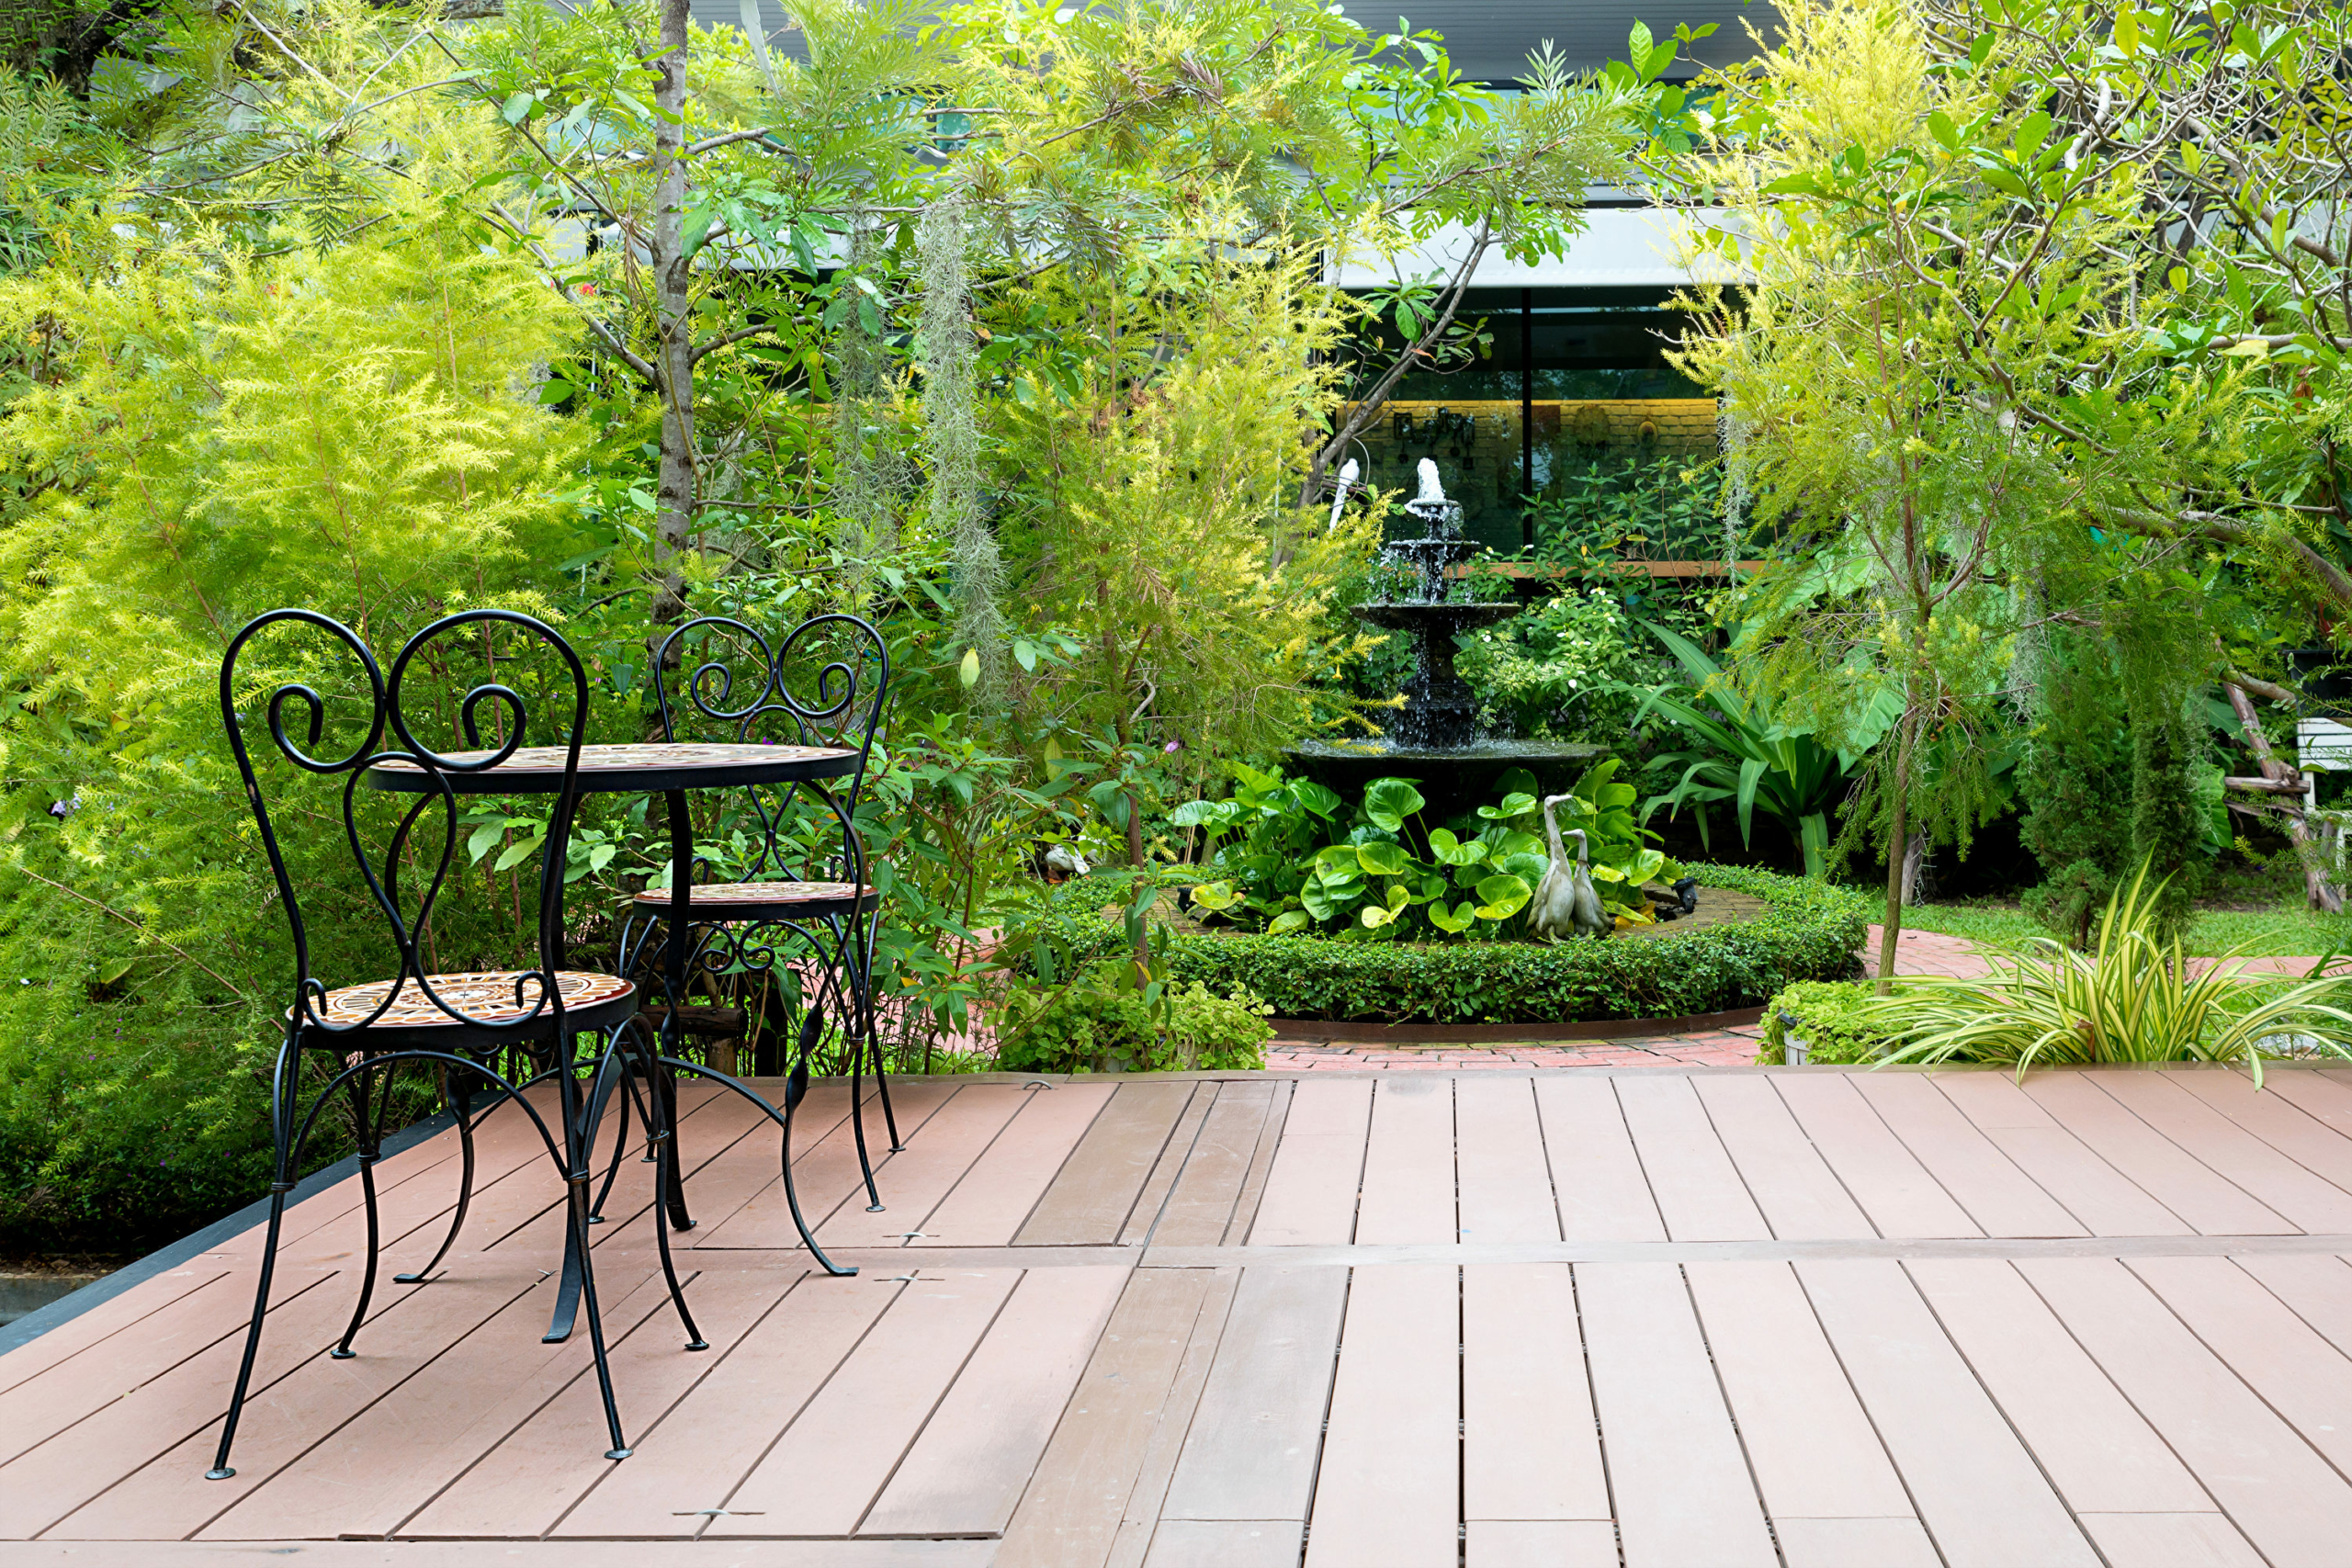 Mua vật dụng ngoài trời tại cửa hàng đồ cũ cũng có thể tạo thêm phong cách cho sân vườn của bạn. (Ảnh: Shutterstock)